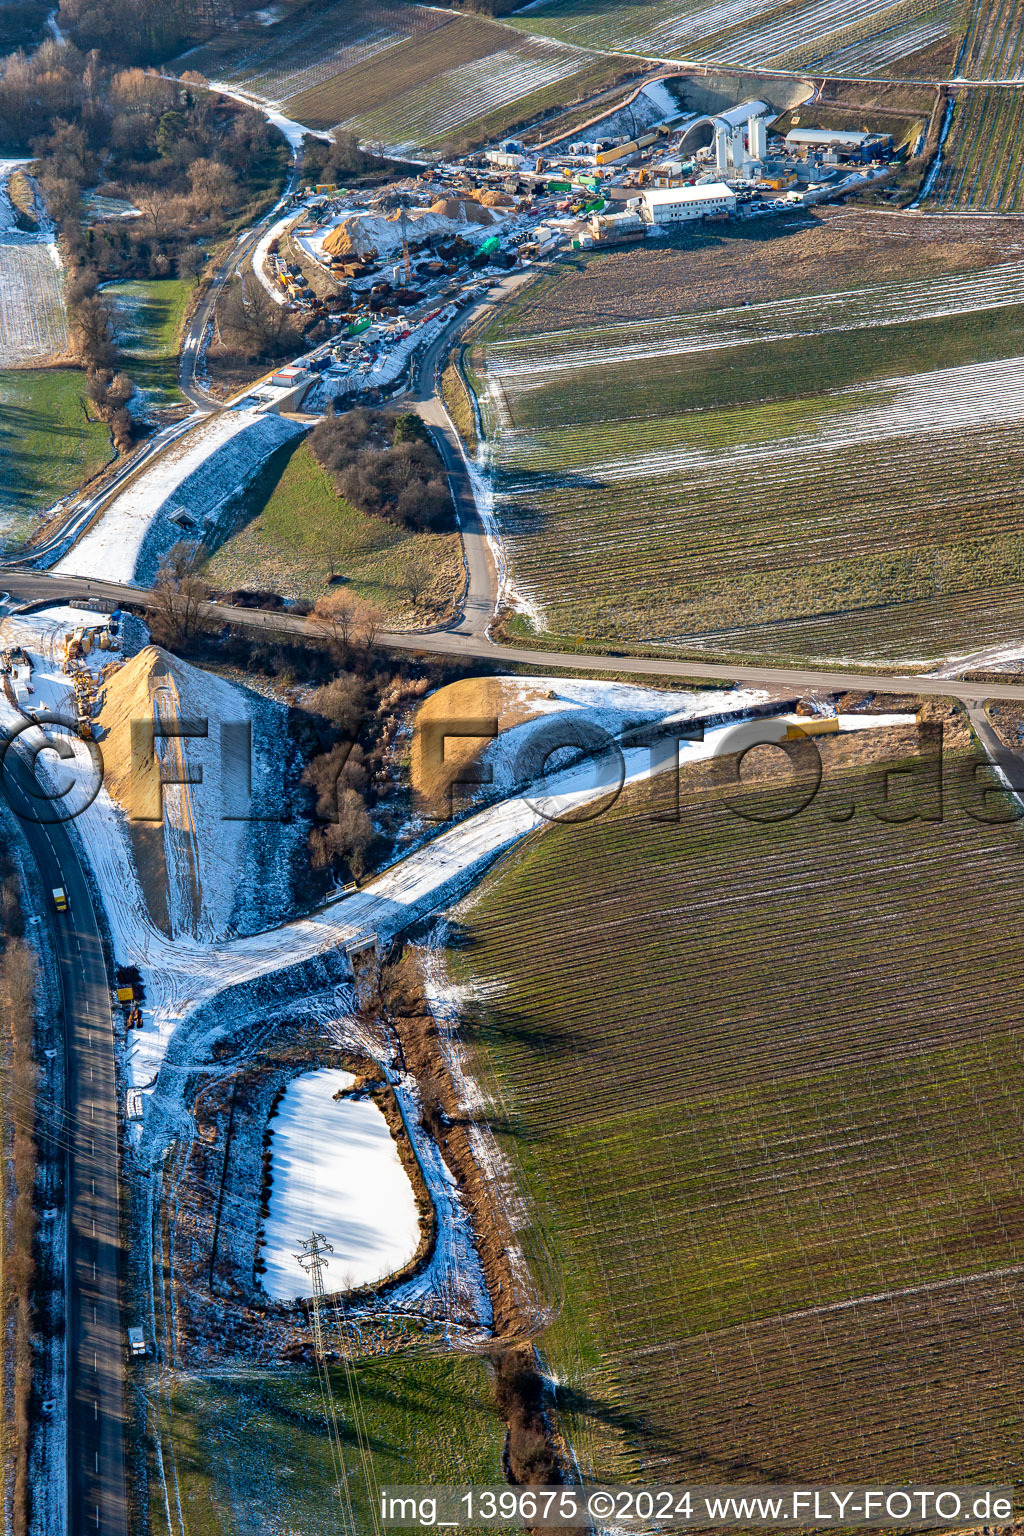 Luftbild von Tunnelbaustelle im Winter bei Schnee in Dörrenbach im Bundesland Rheinland-Pfalz, Deutschland